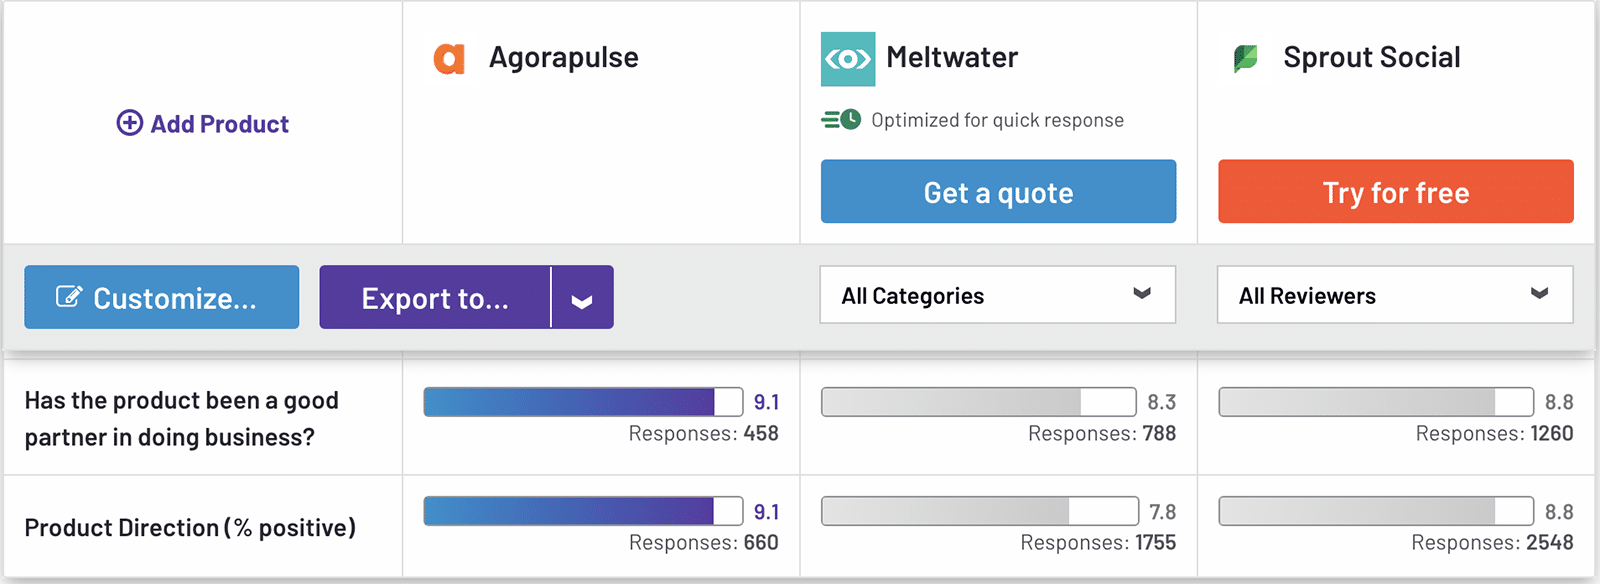 Comparaison G2 Agorapulse, Meltwater, Sprout Social orientation produit